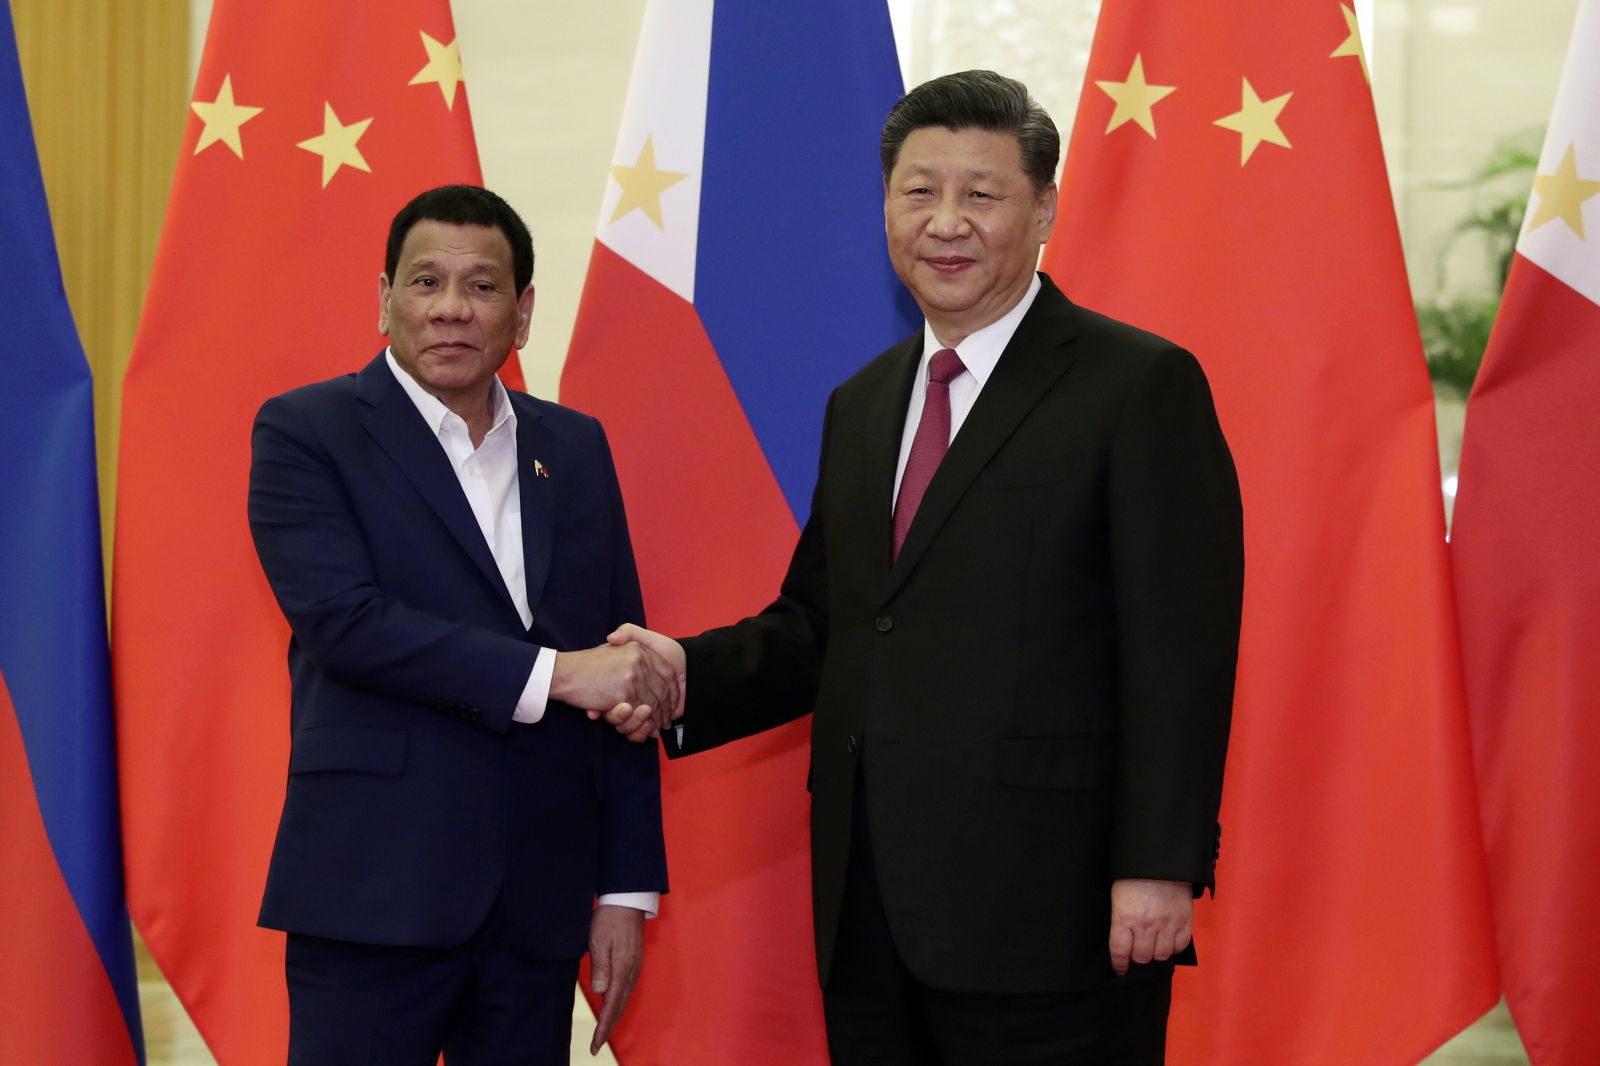 Tổng thống Philippines Rodrigo Duterte chụp ảnh với Chủ tịch Trung Quốc Tập Cận Bình tại Đại lễ đường Nhân dân ở Bắc Kinh vào tháng 4 năm ngoái. Ảnh: AP